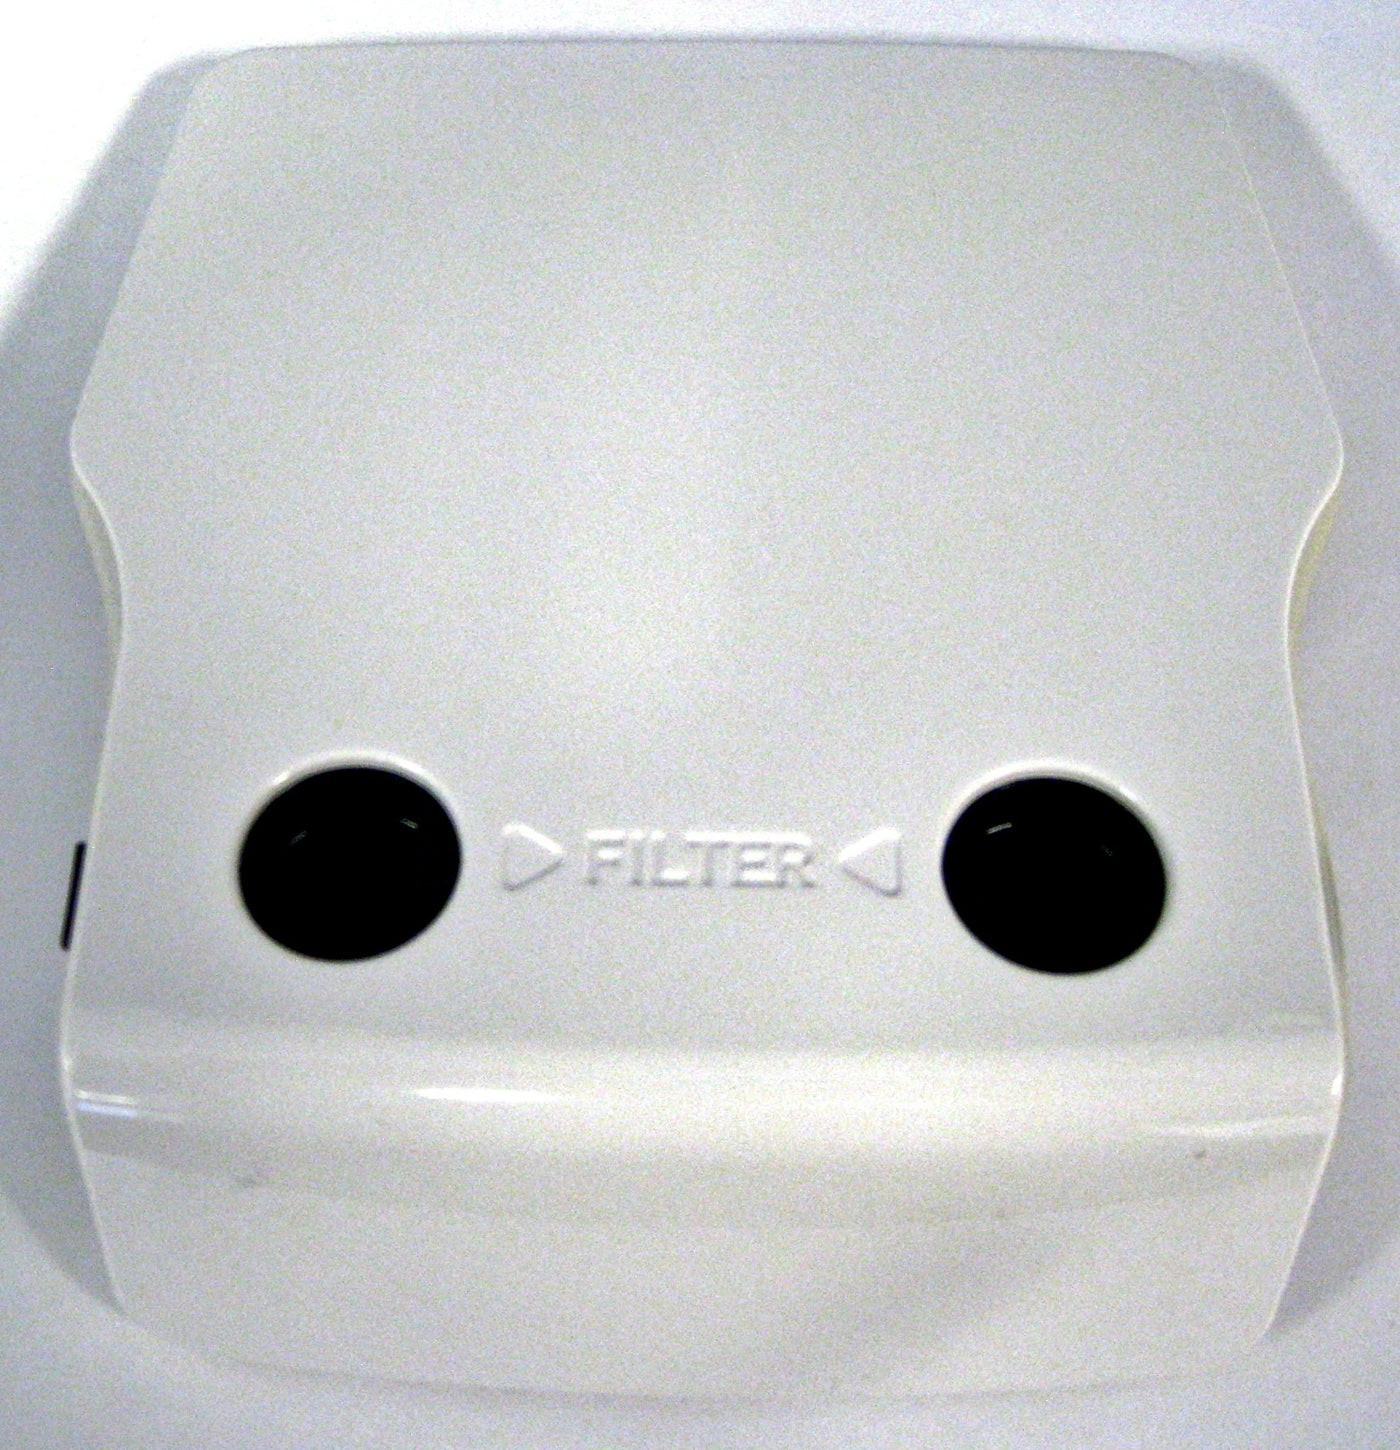 SEBO E3 - Exhaust filter Cover